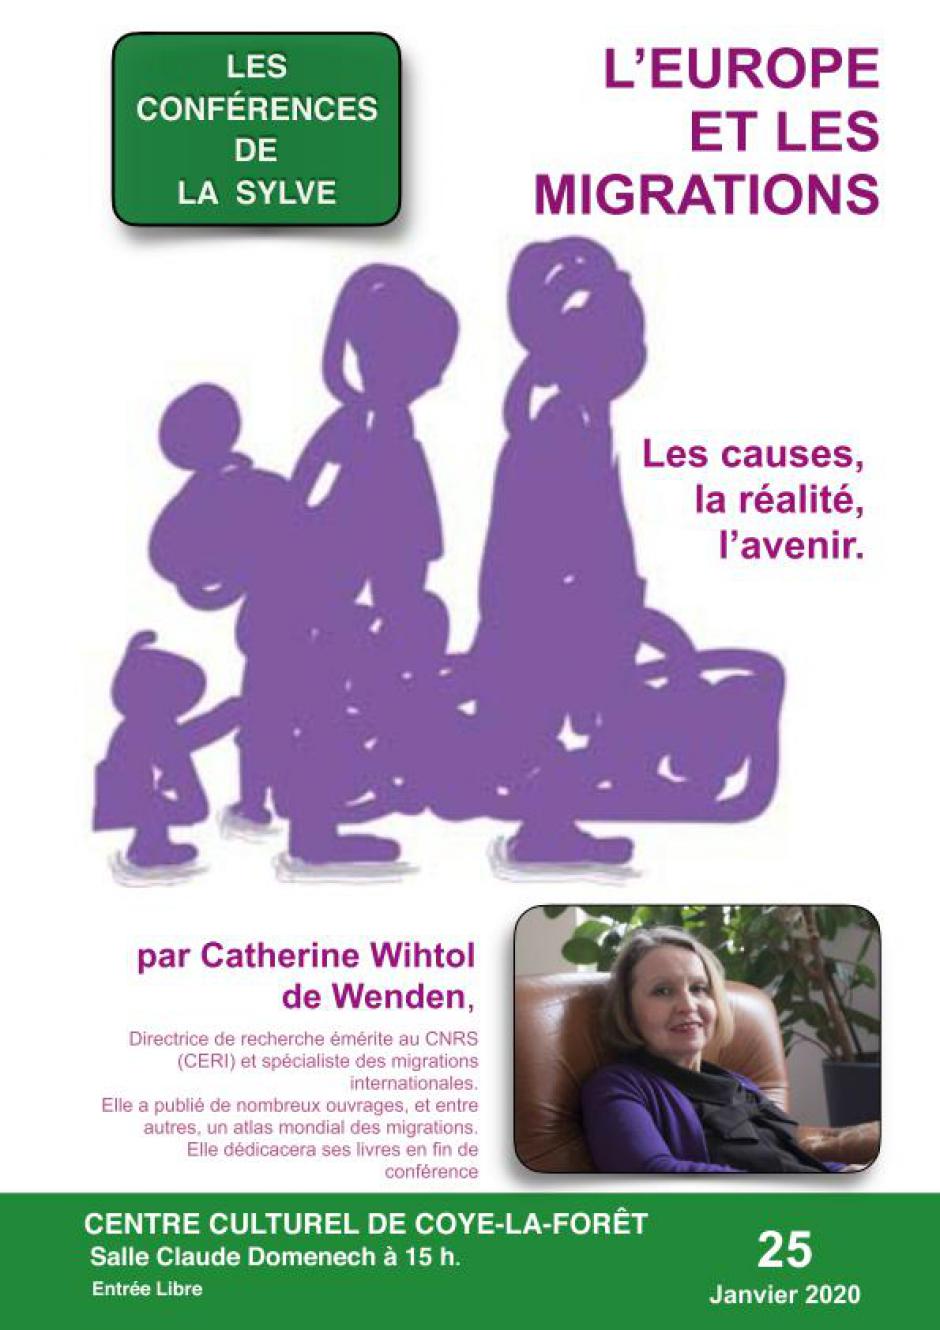 25 janvier, Coye-la-Forêt - Les conférences de la Sylve « L'Europe et les migrations », avec Catherine Wihtol de Wenden